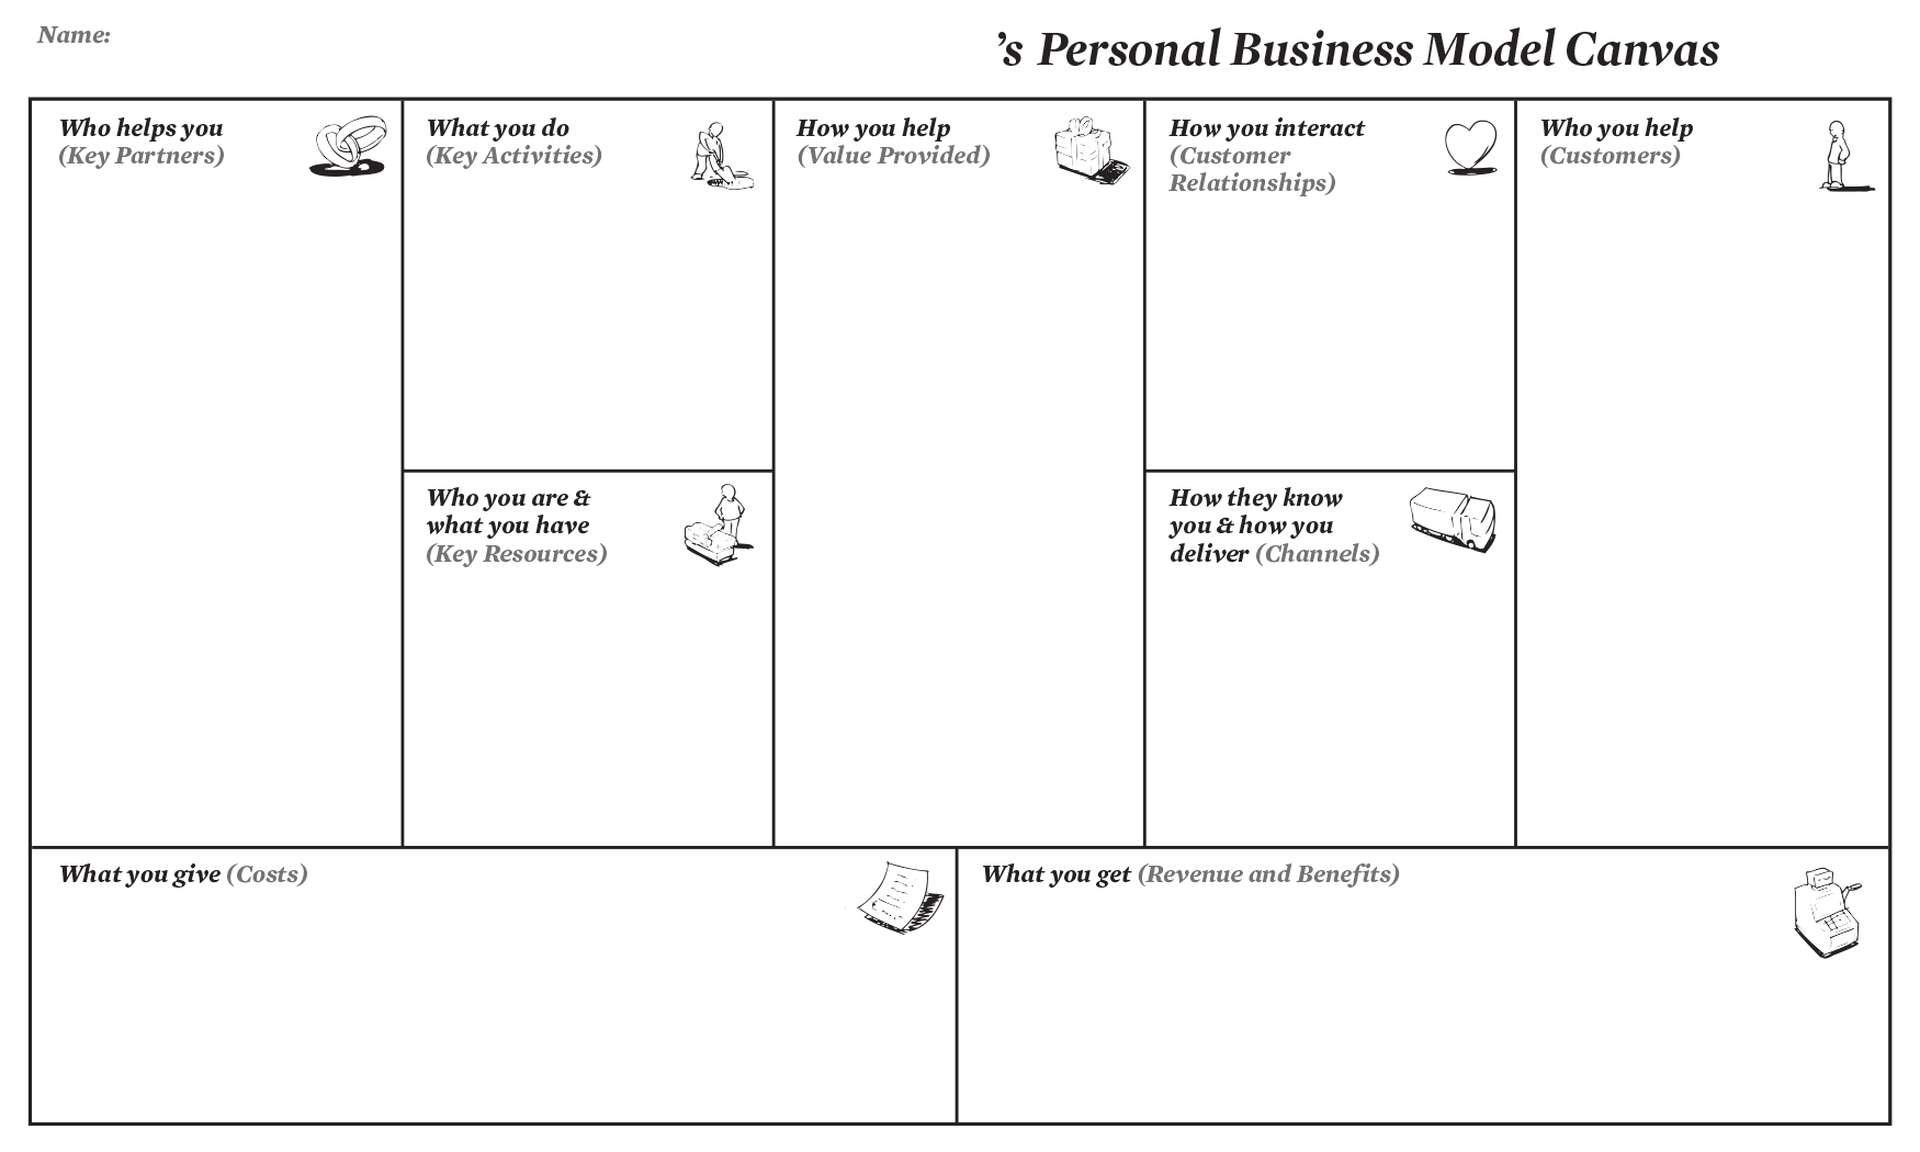 business model you workshop